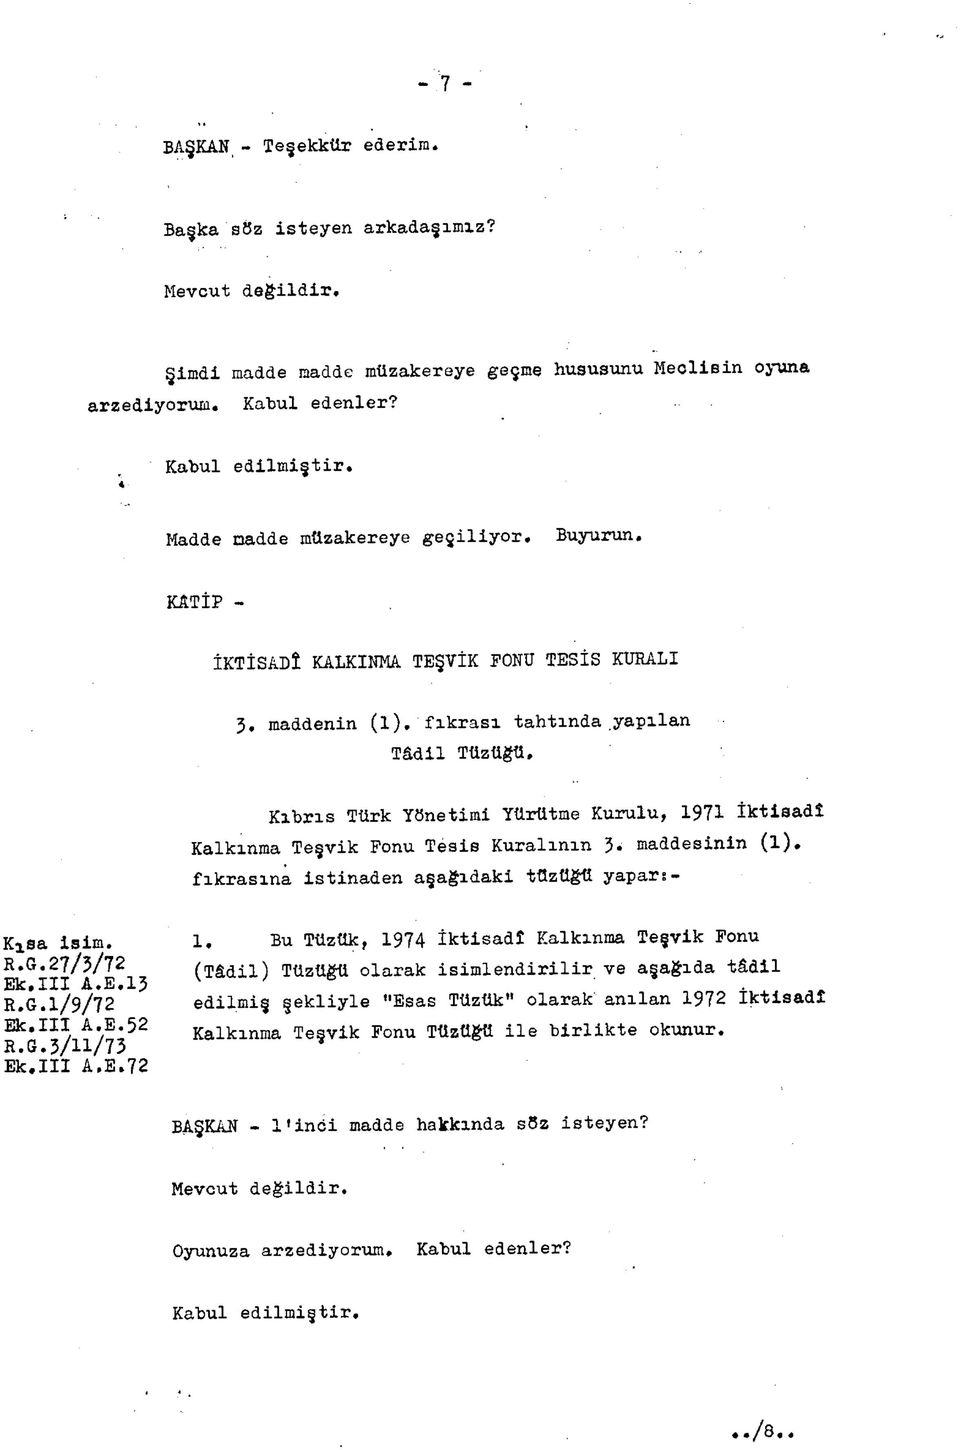 Kıbrıs Türk Yönetimi Yürütme Kurulu, 1971 İktisadî Kalkınma Teşvik Fonu Tesis Kuralının 3. maddesinin (l). fıkrasına istinaden aşağıdaki tüzüğü yapars- Kjsa isim. R.G.27/3/72 Ek.III A.E.13 R.G.1/9/72 Ek.